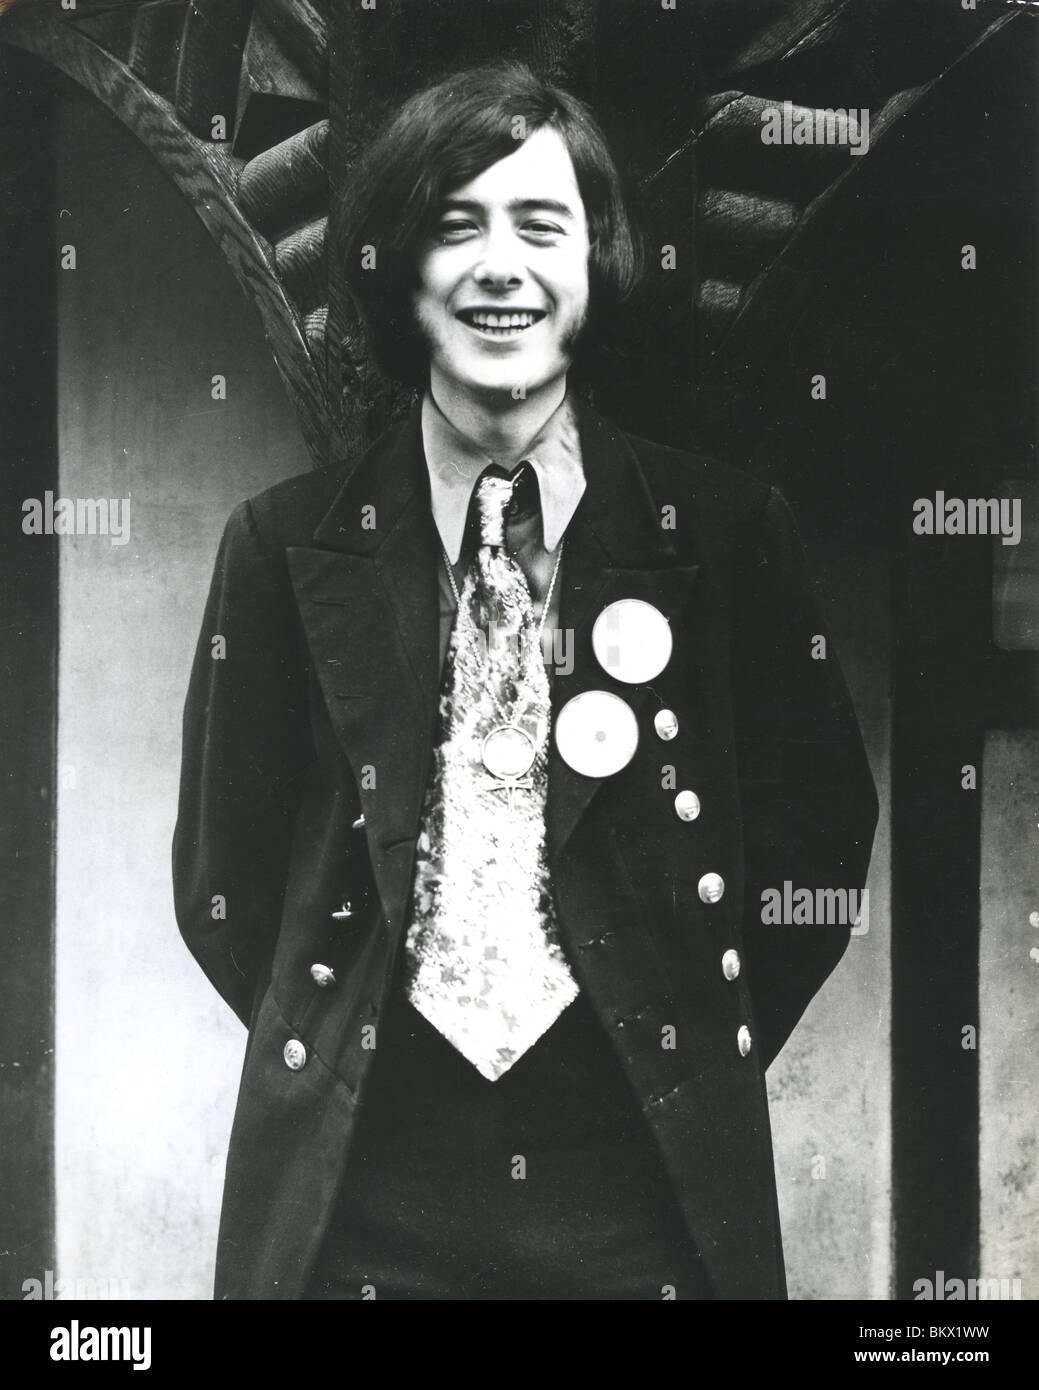 YARDBIRDS - Jimmy Page in 1966 Stock Photo - Alamy